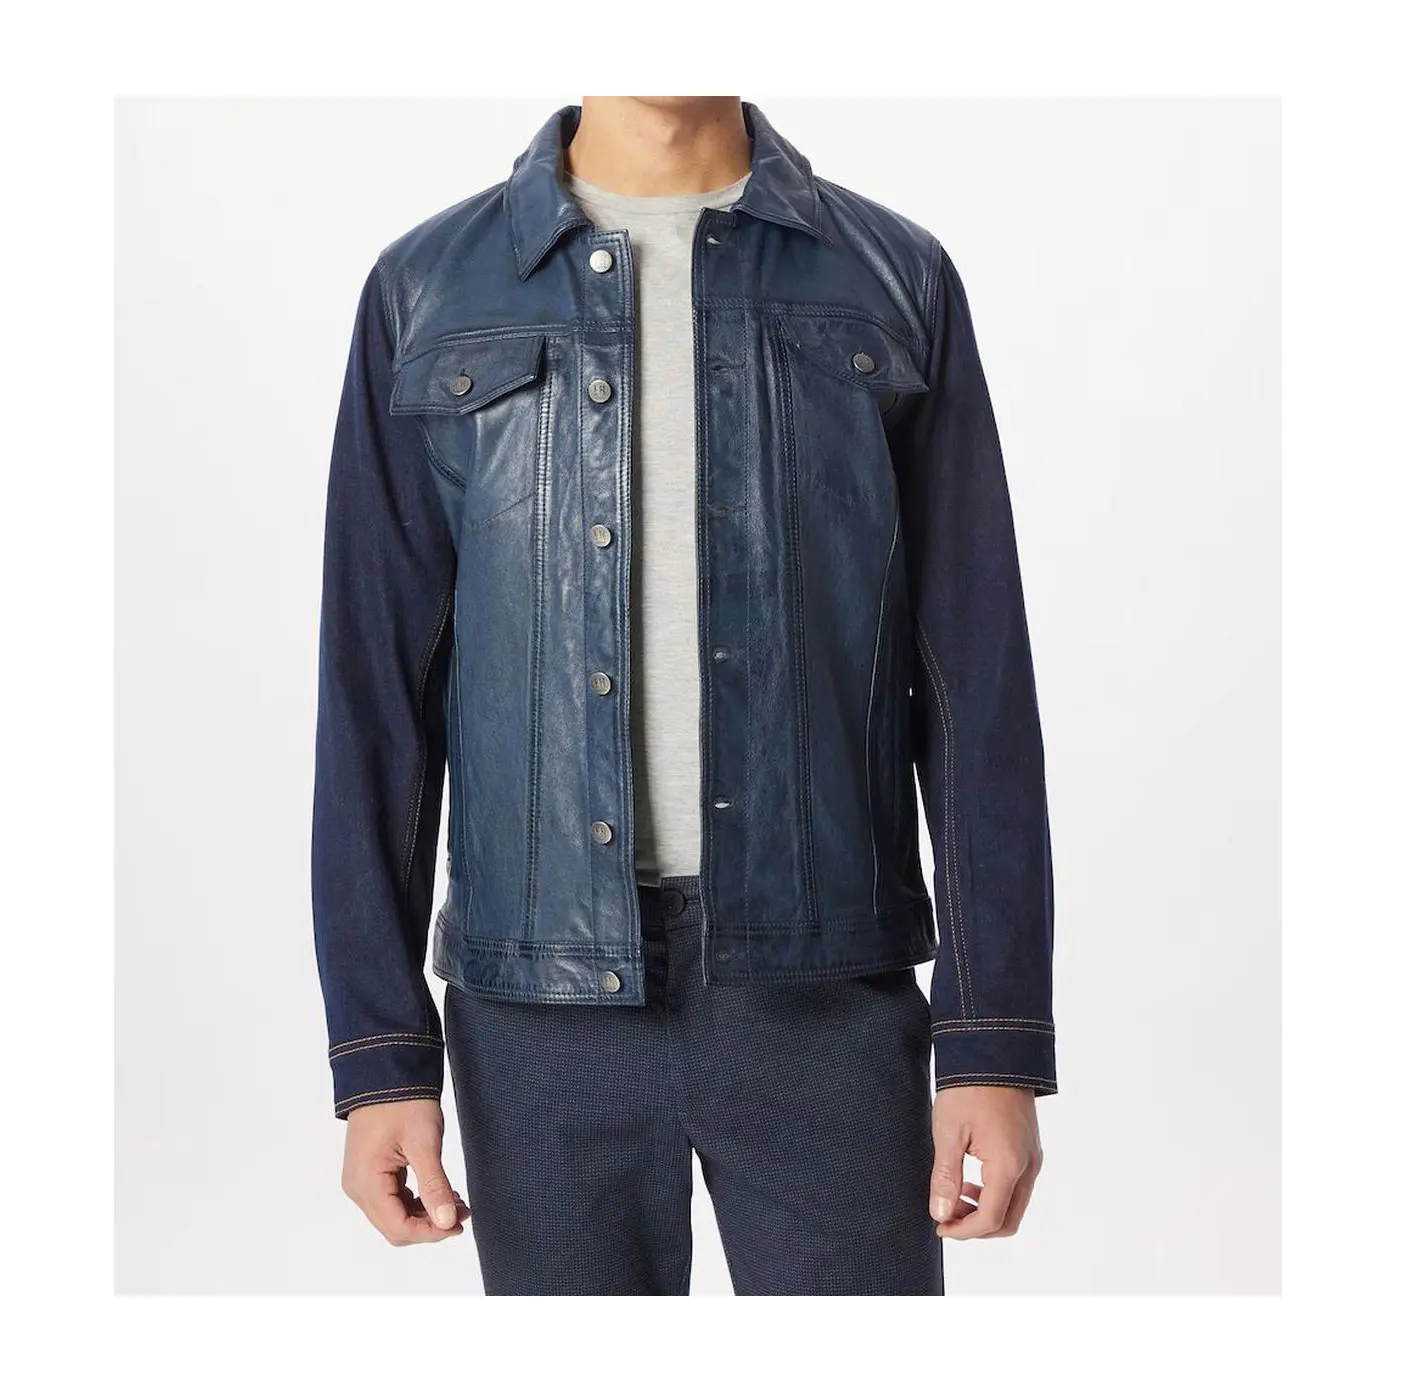 Homens denim mangas jaqueta de couro em cordeiro nappa com listras marca famosa zip up jaquetas de bolso masculino